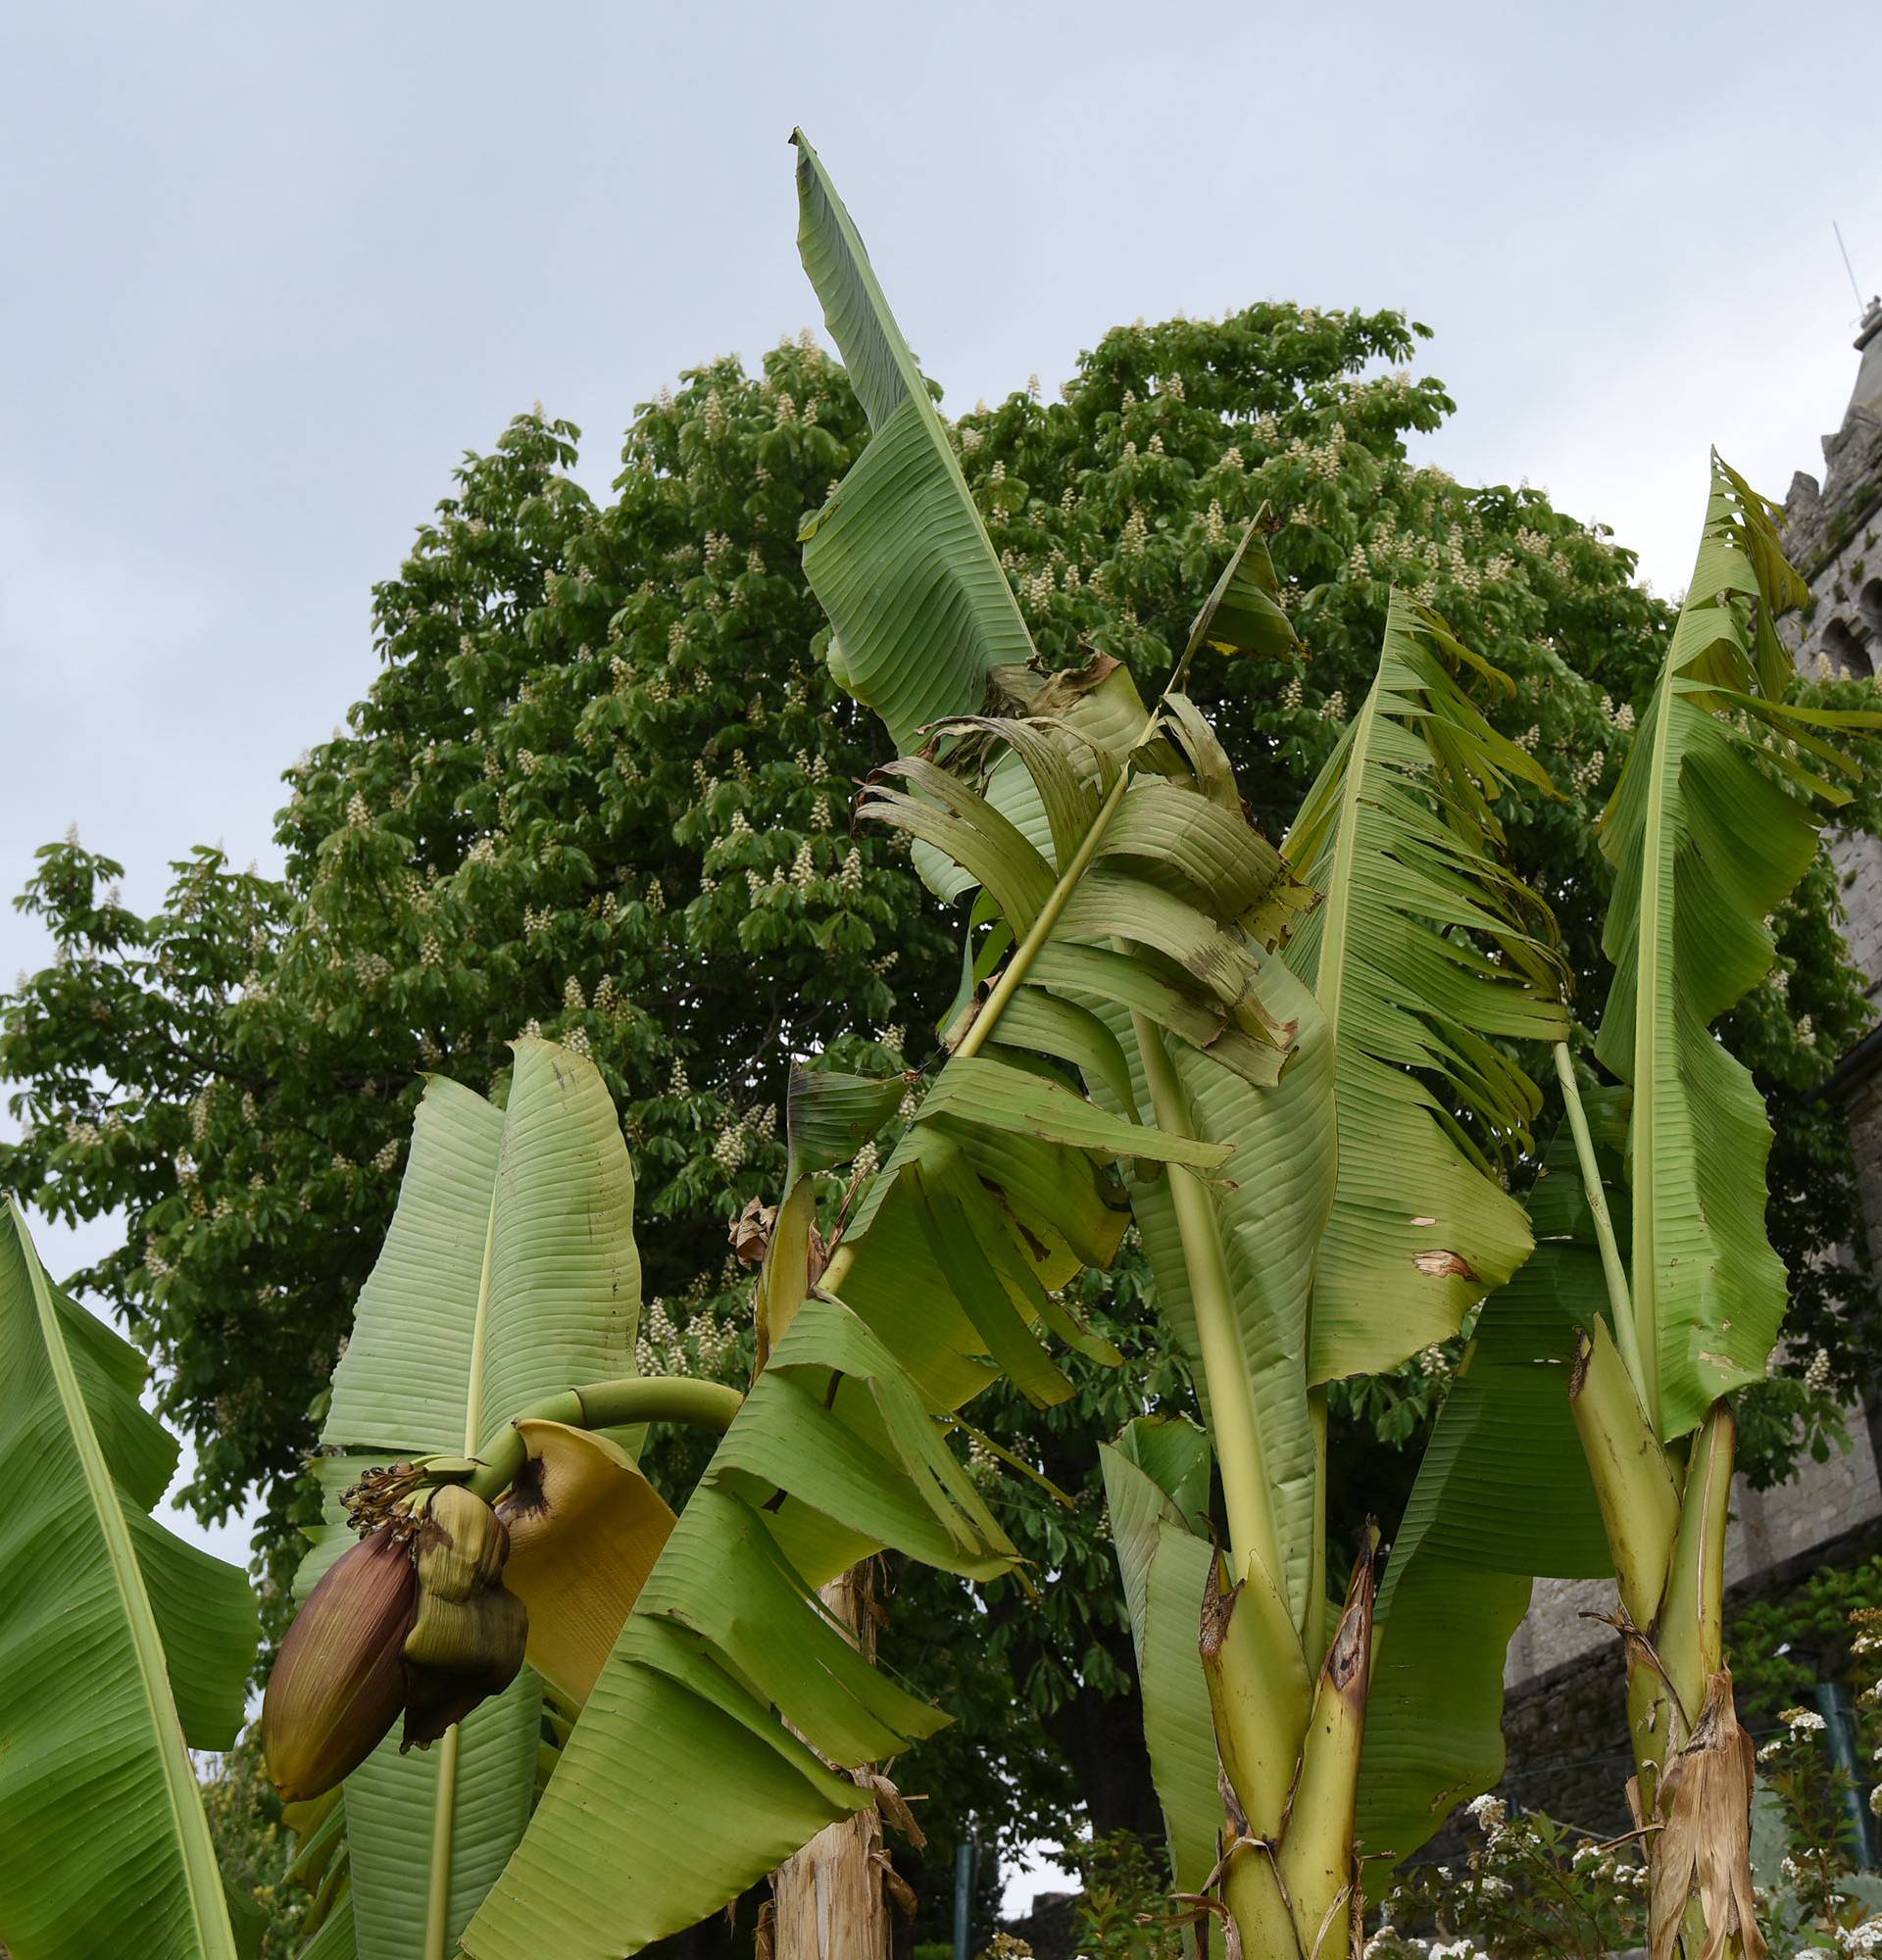 Čeka plodove: Kad se najmanje nadaš, u vrtu ti narastu banane